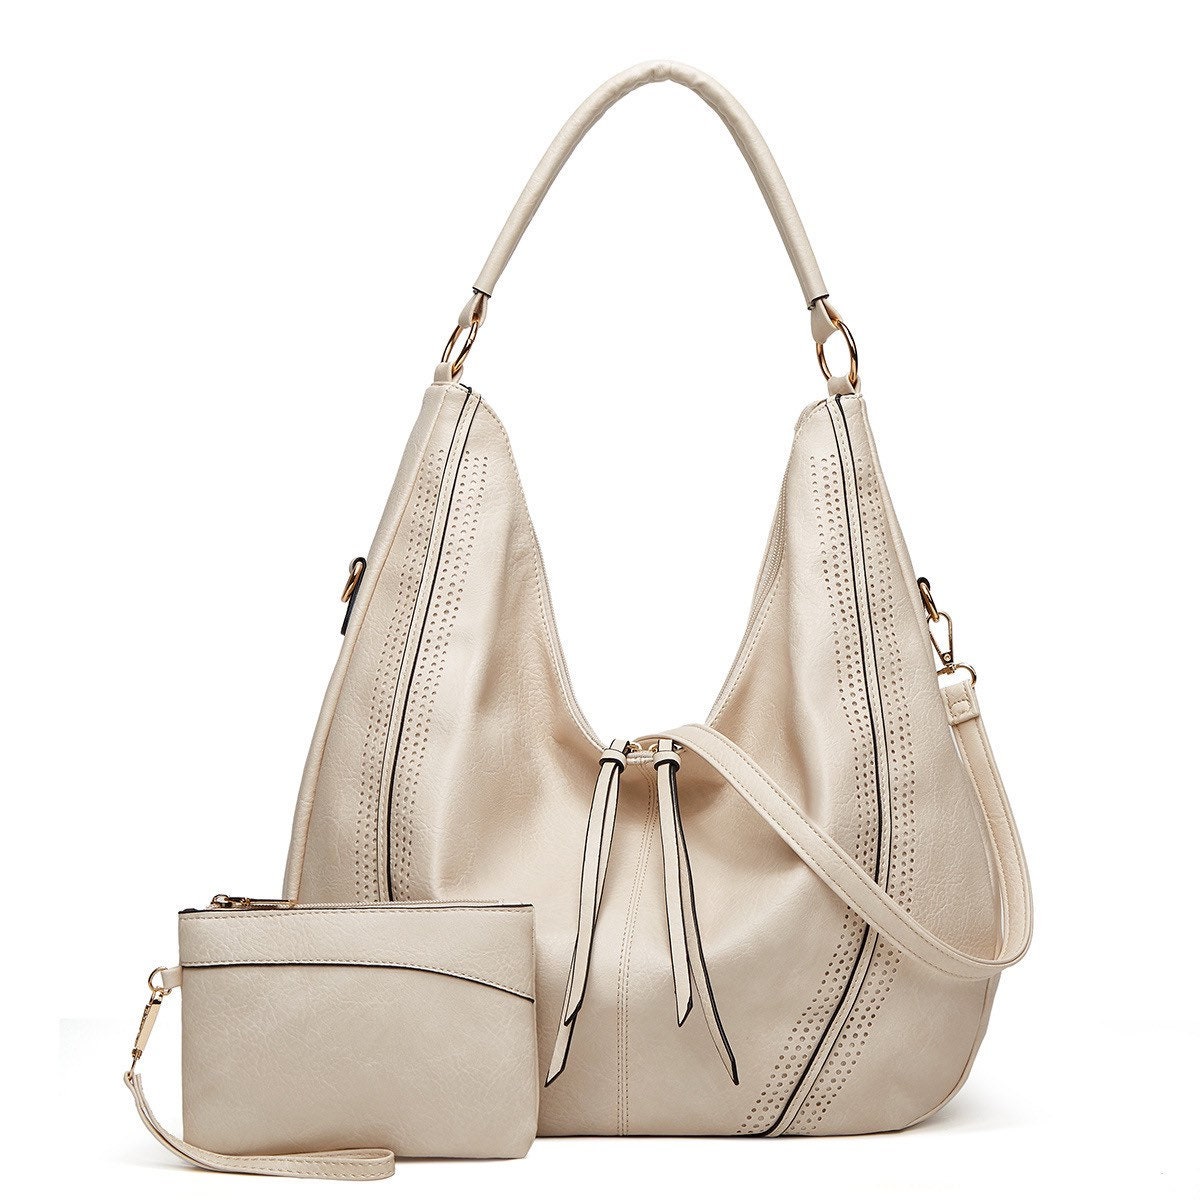 Vegan leather handbag Teria Yabar White in Vegan leather - 15285301